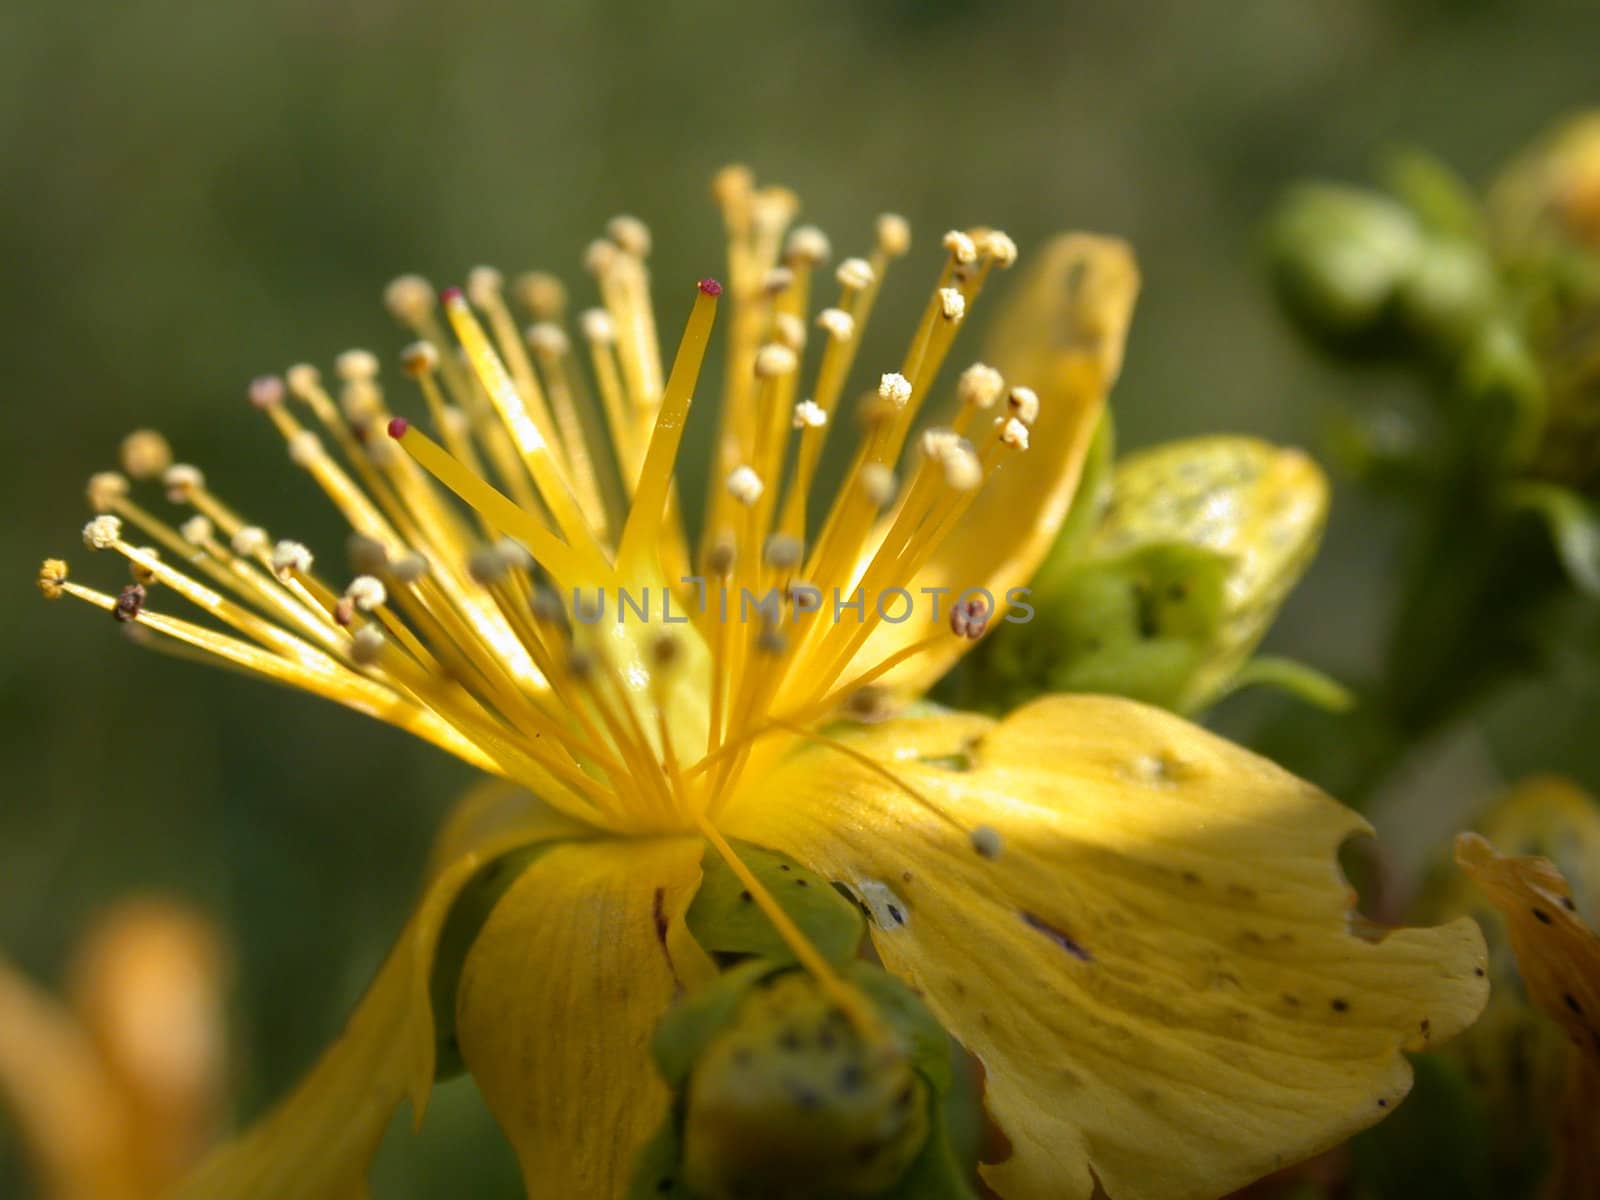 The yellow flower macro, nature